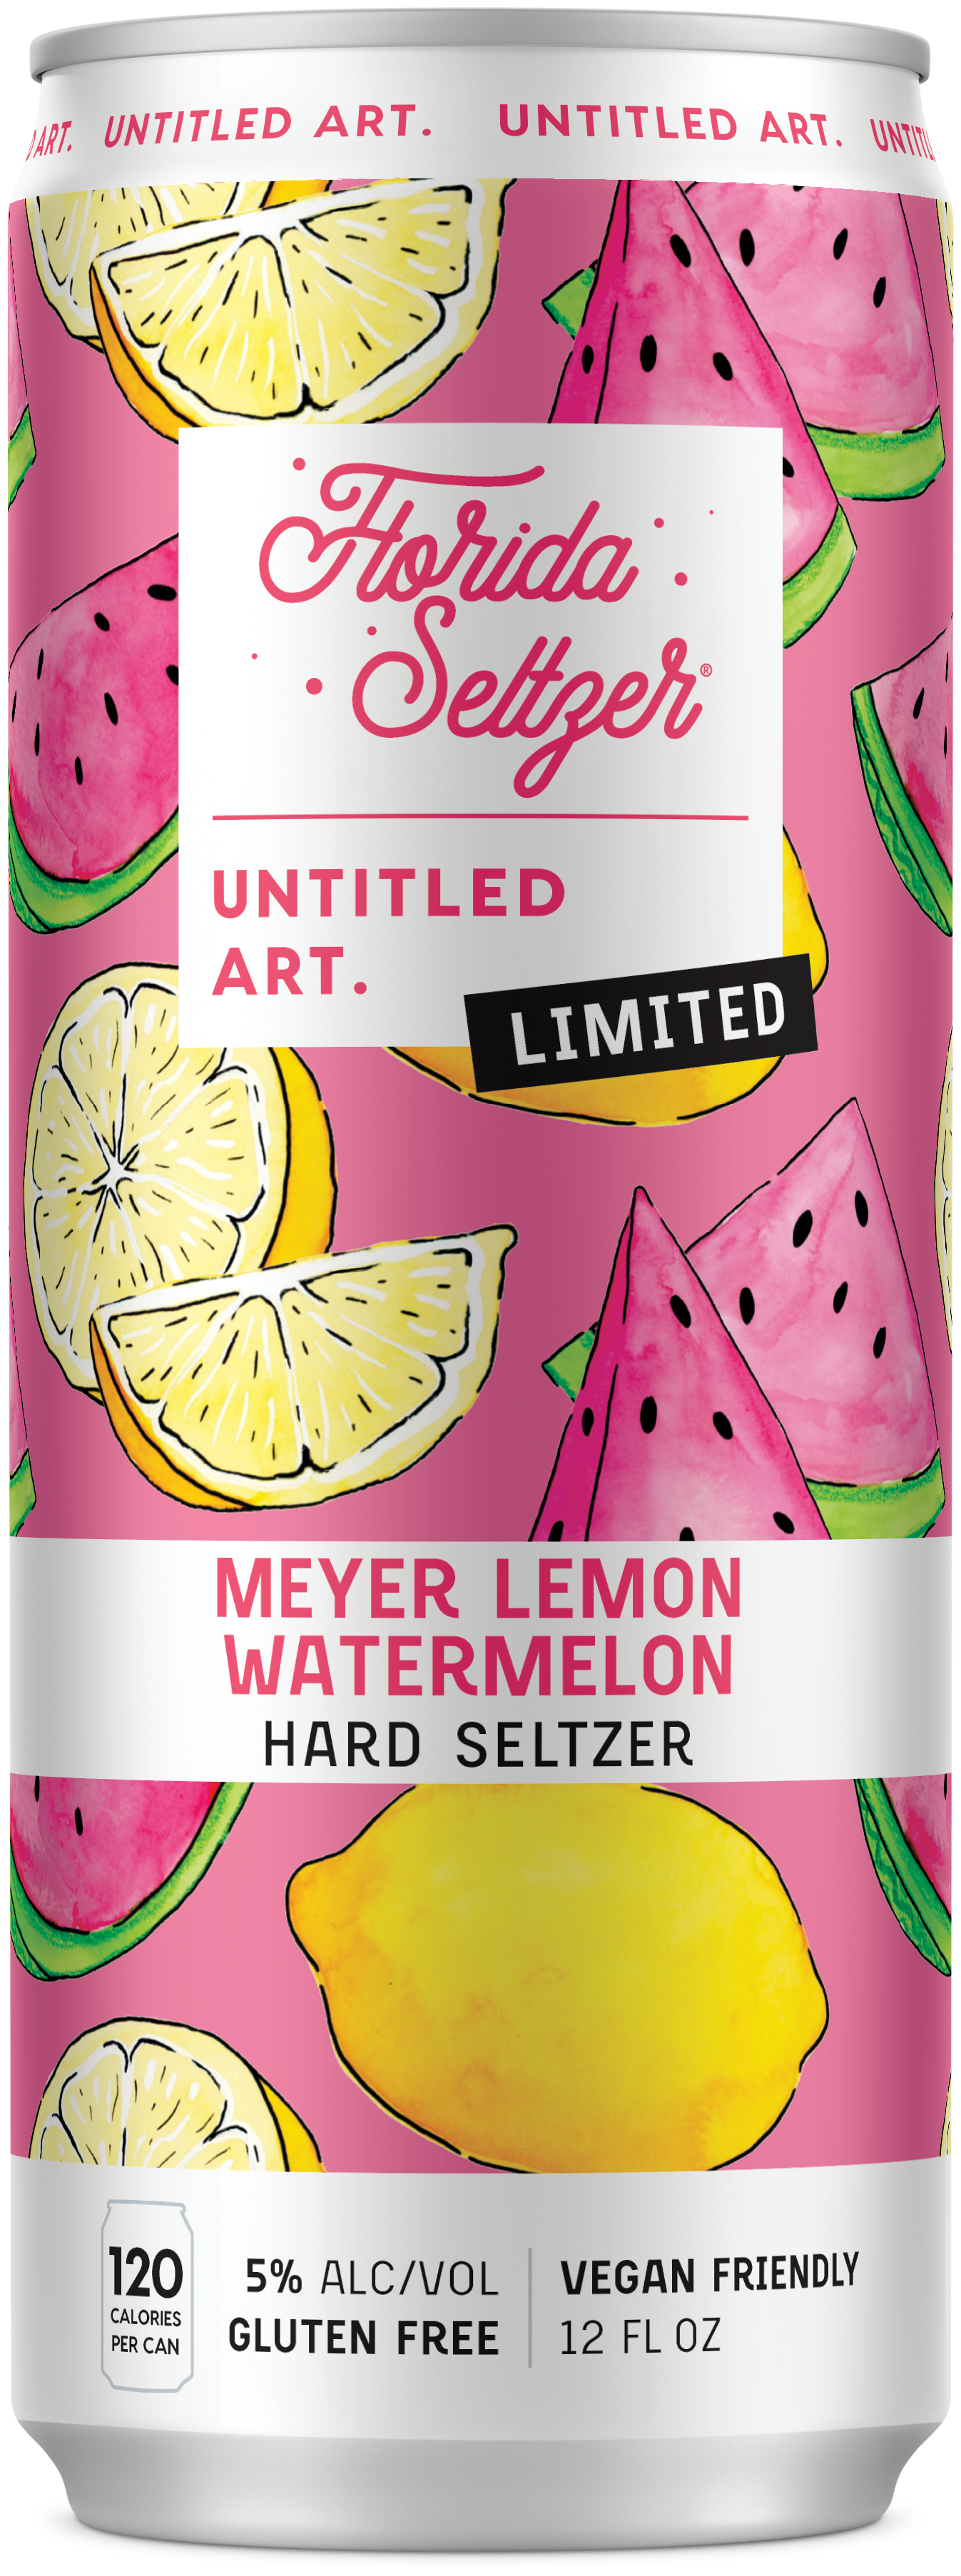 A can of myrtle lemon watermelon.